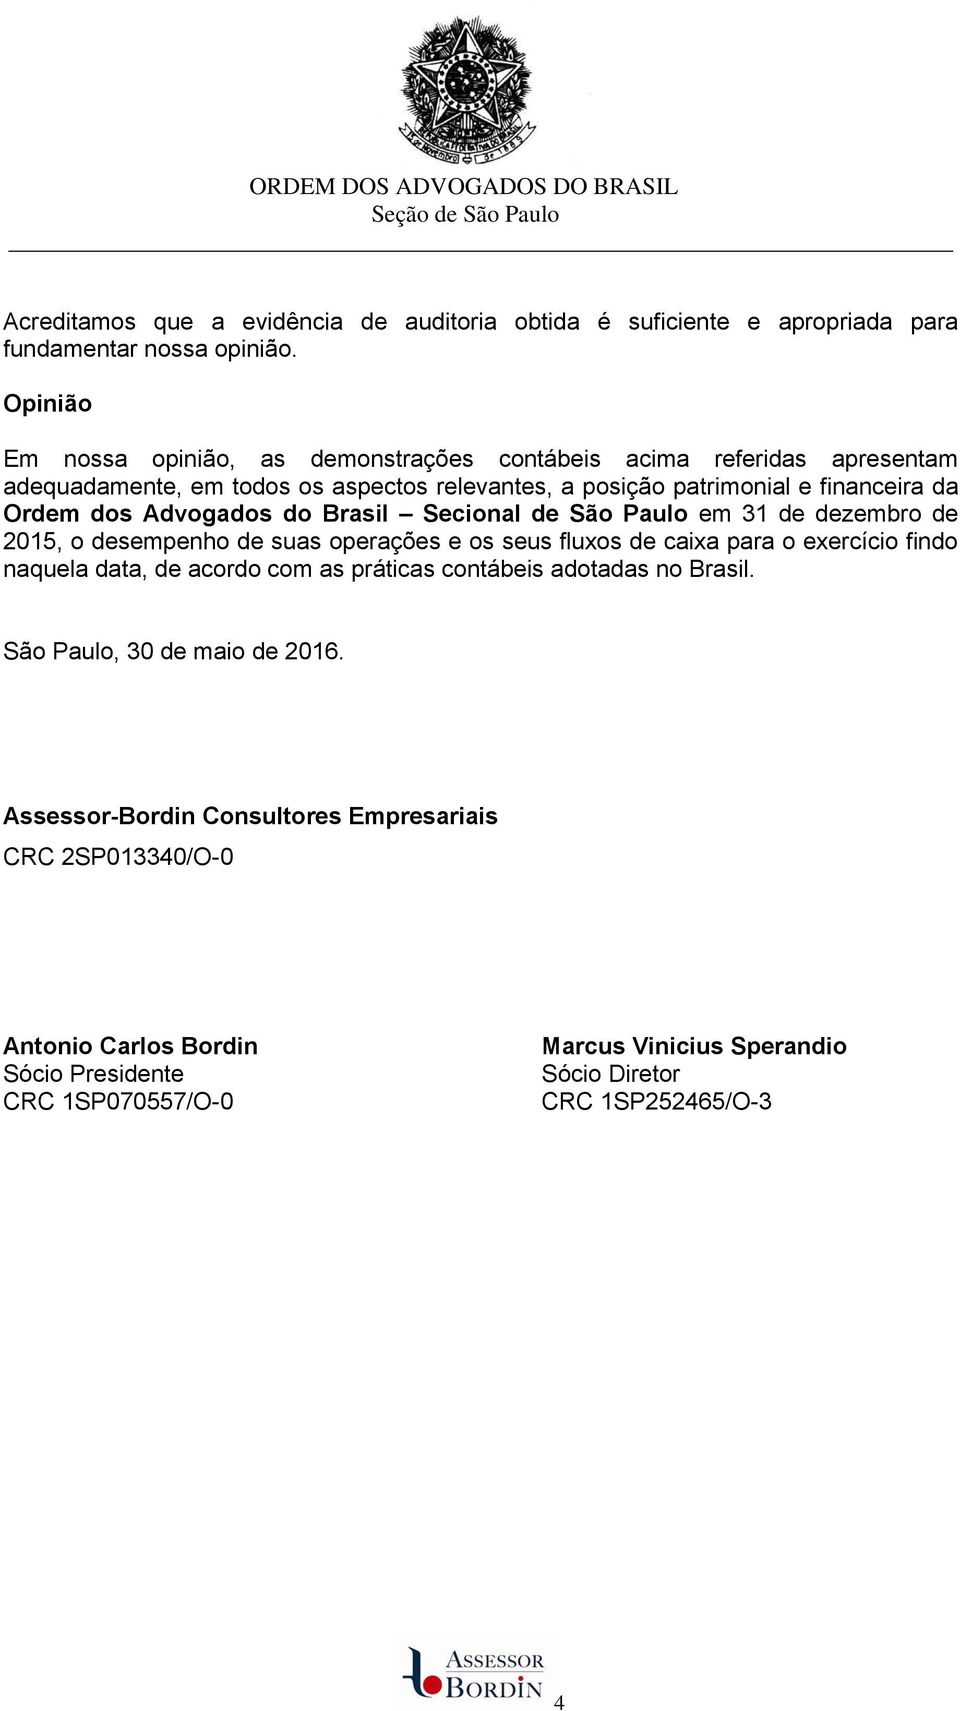 Advogados do Brasil Secional de São Paulo em 31 de dezembro de 2015, o desempenho de suas operações e os seus fluxos de caixa para o exercício findo naquela data, de acordo com